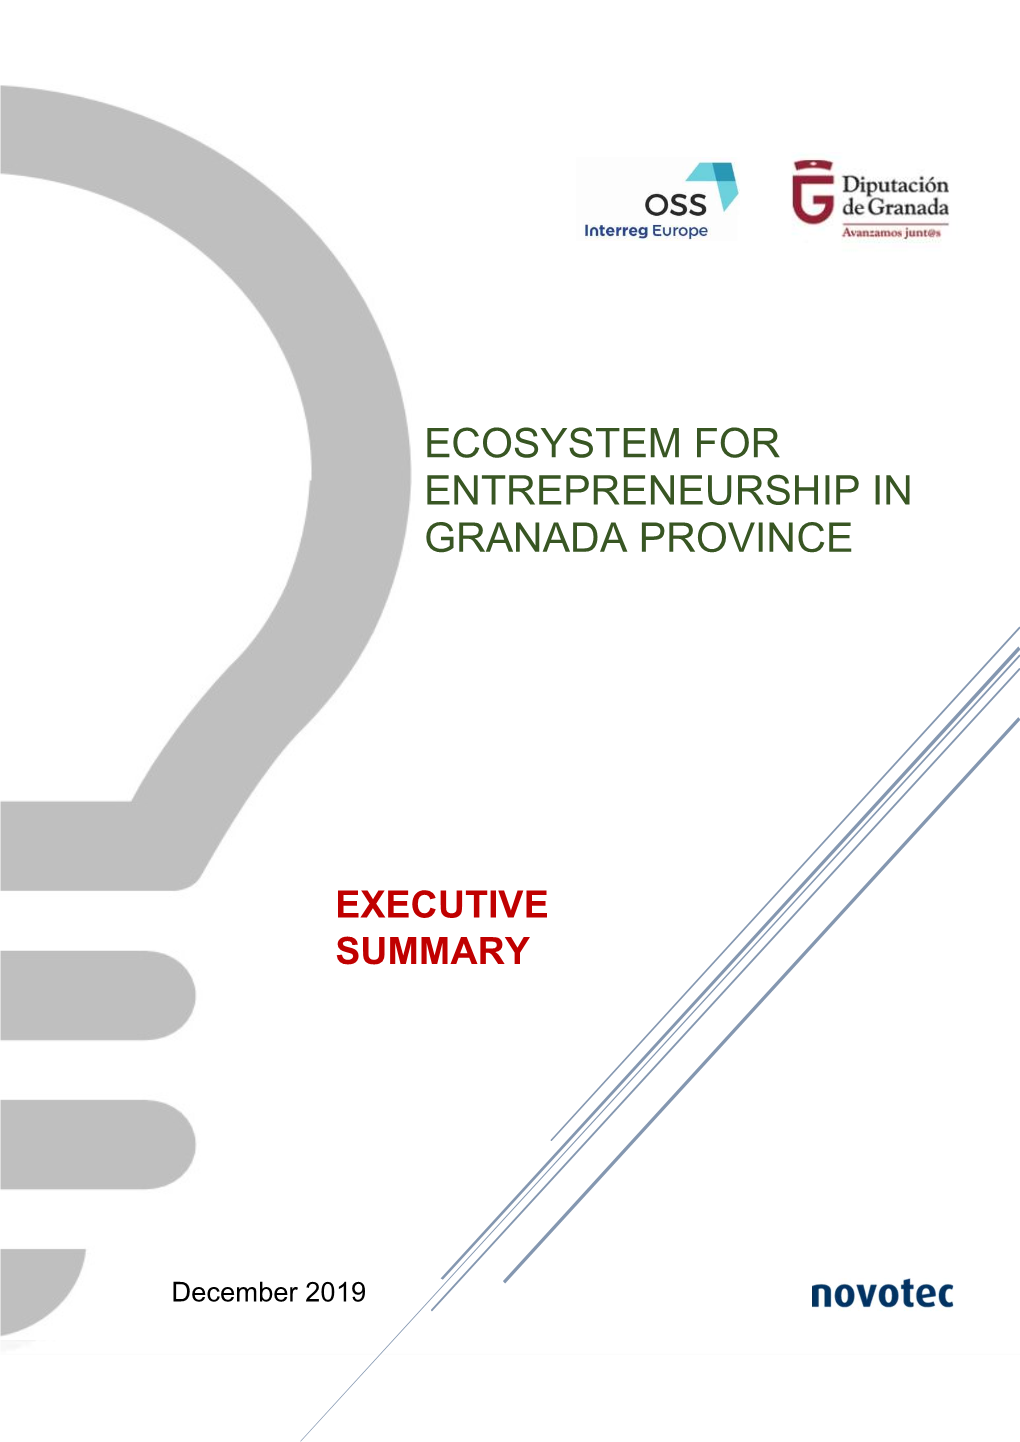 Ecosystem for Entrepreneurship in Granada Province